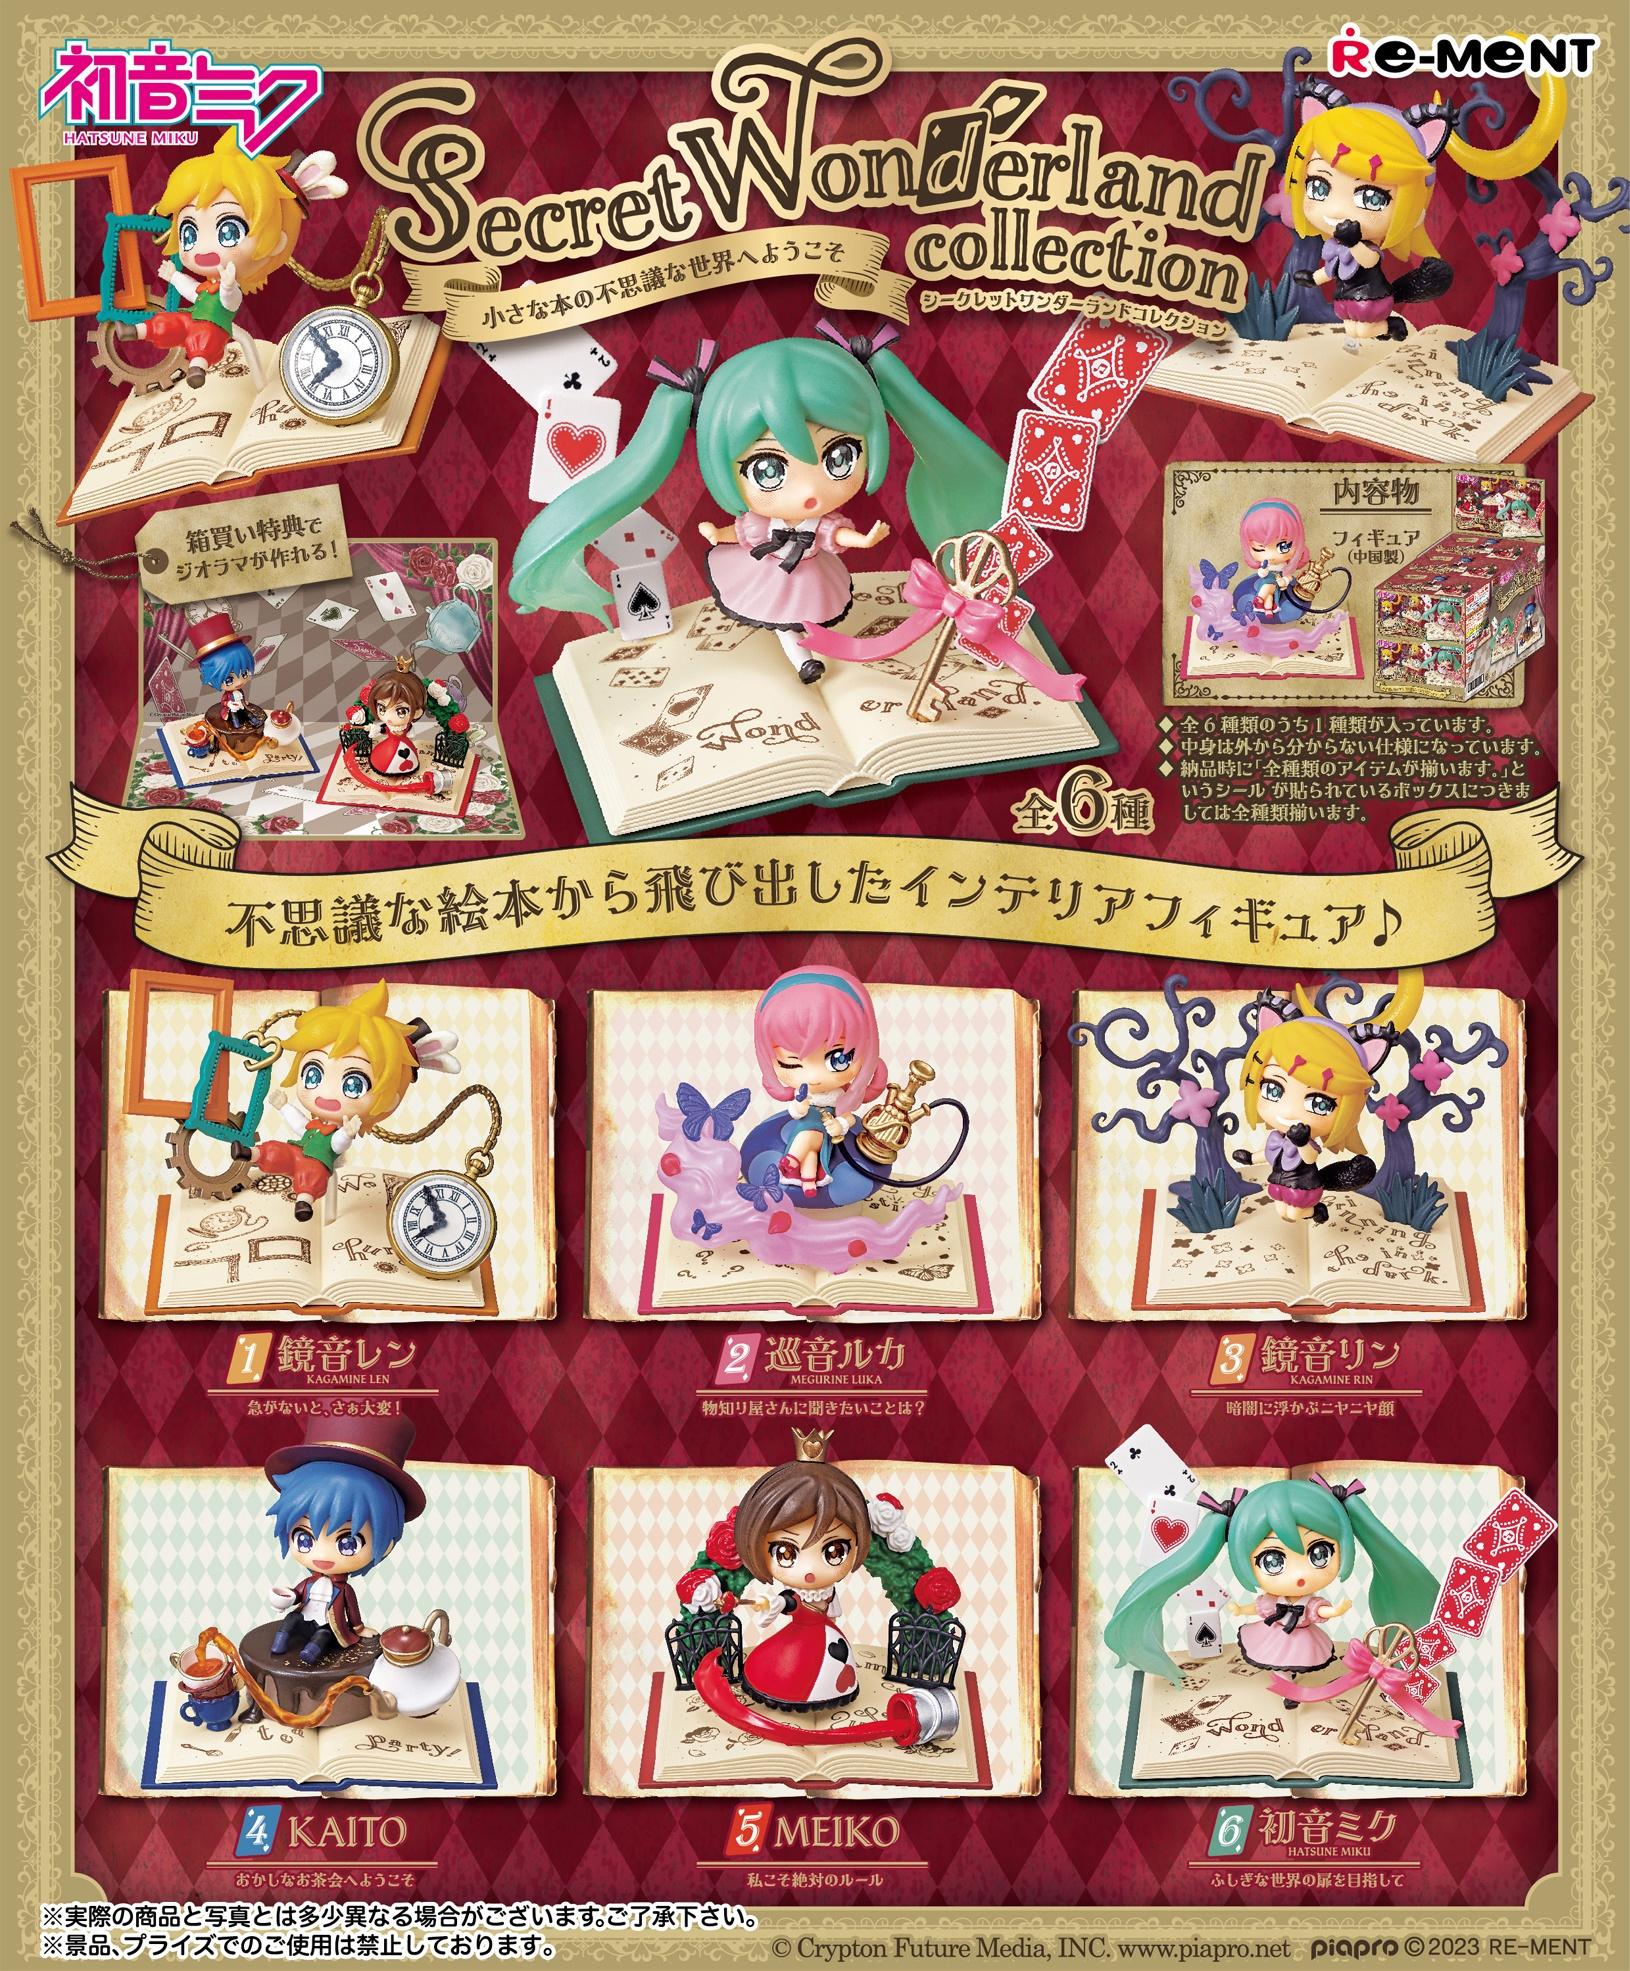 Vocaloid - Hatsune Miku Series: Secret Wonderland Collection